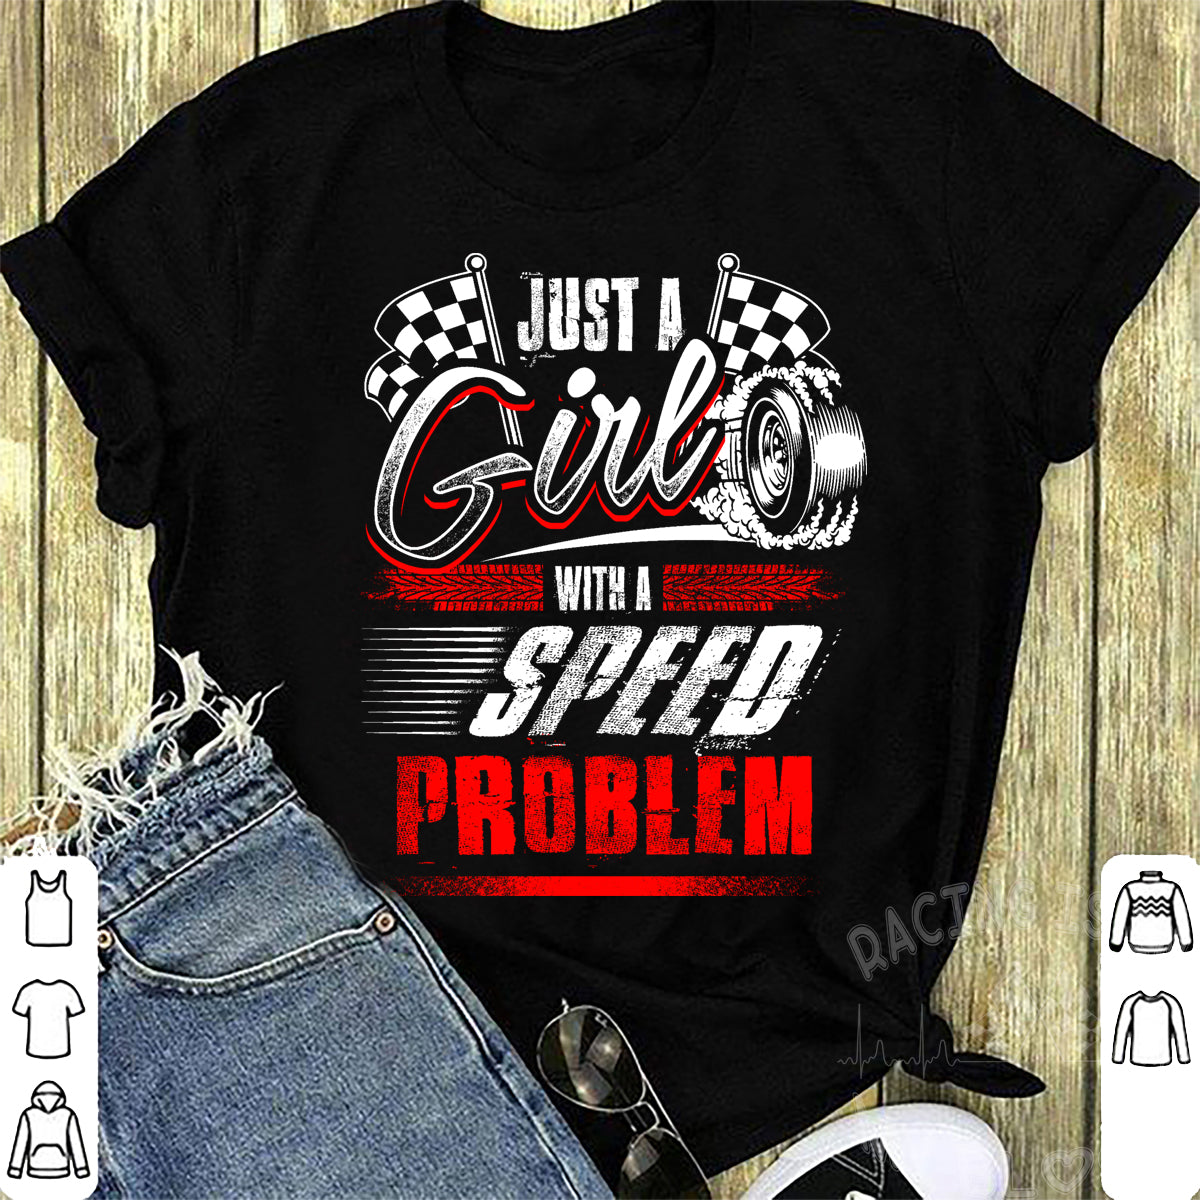 Racing Girl